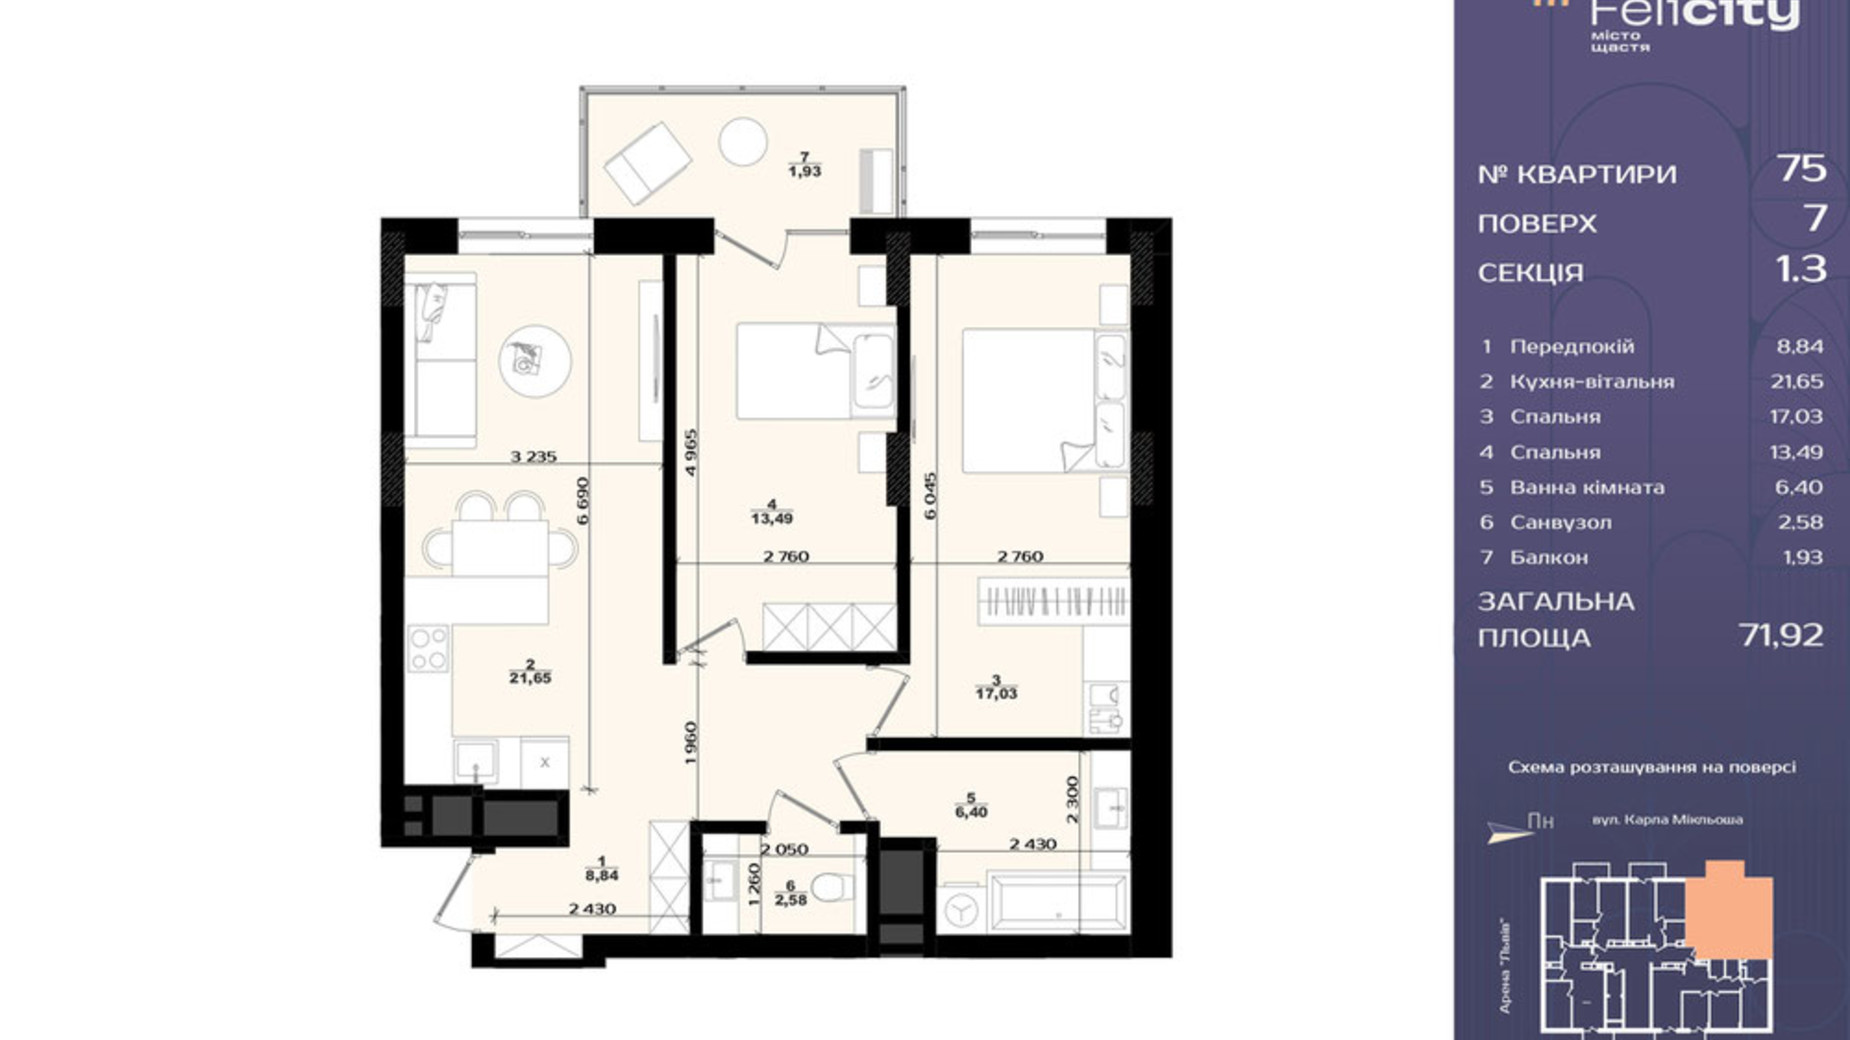 Планировка 2-комнатной квартиры в ЖК Felicity 71.92 м², фото 709717